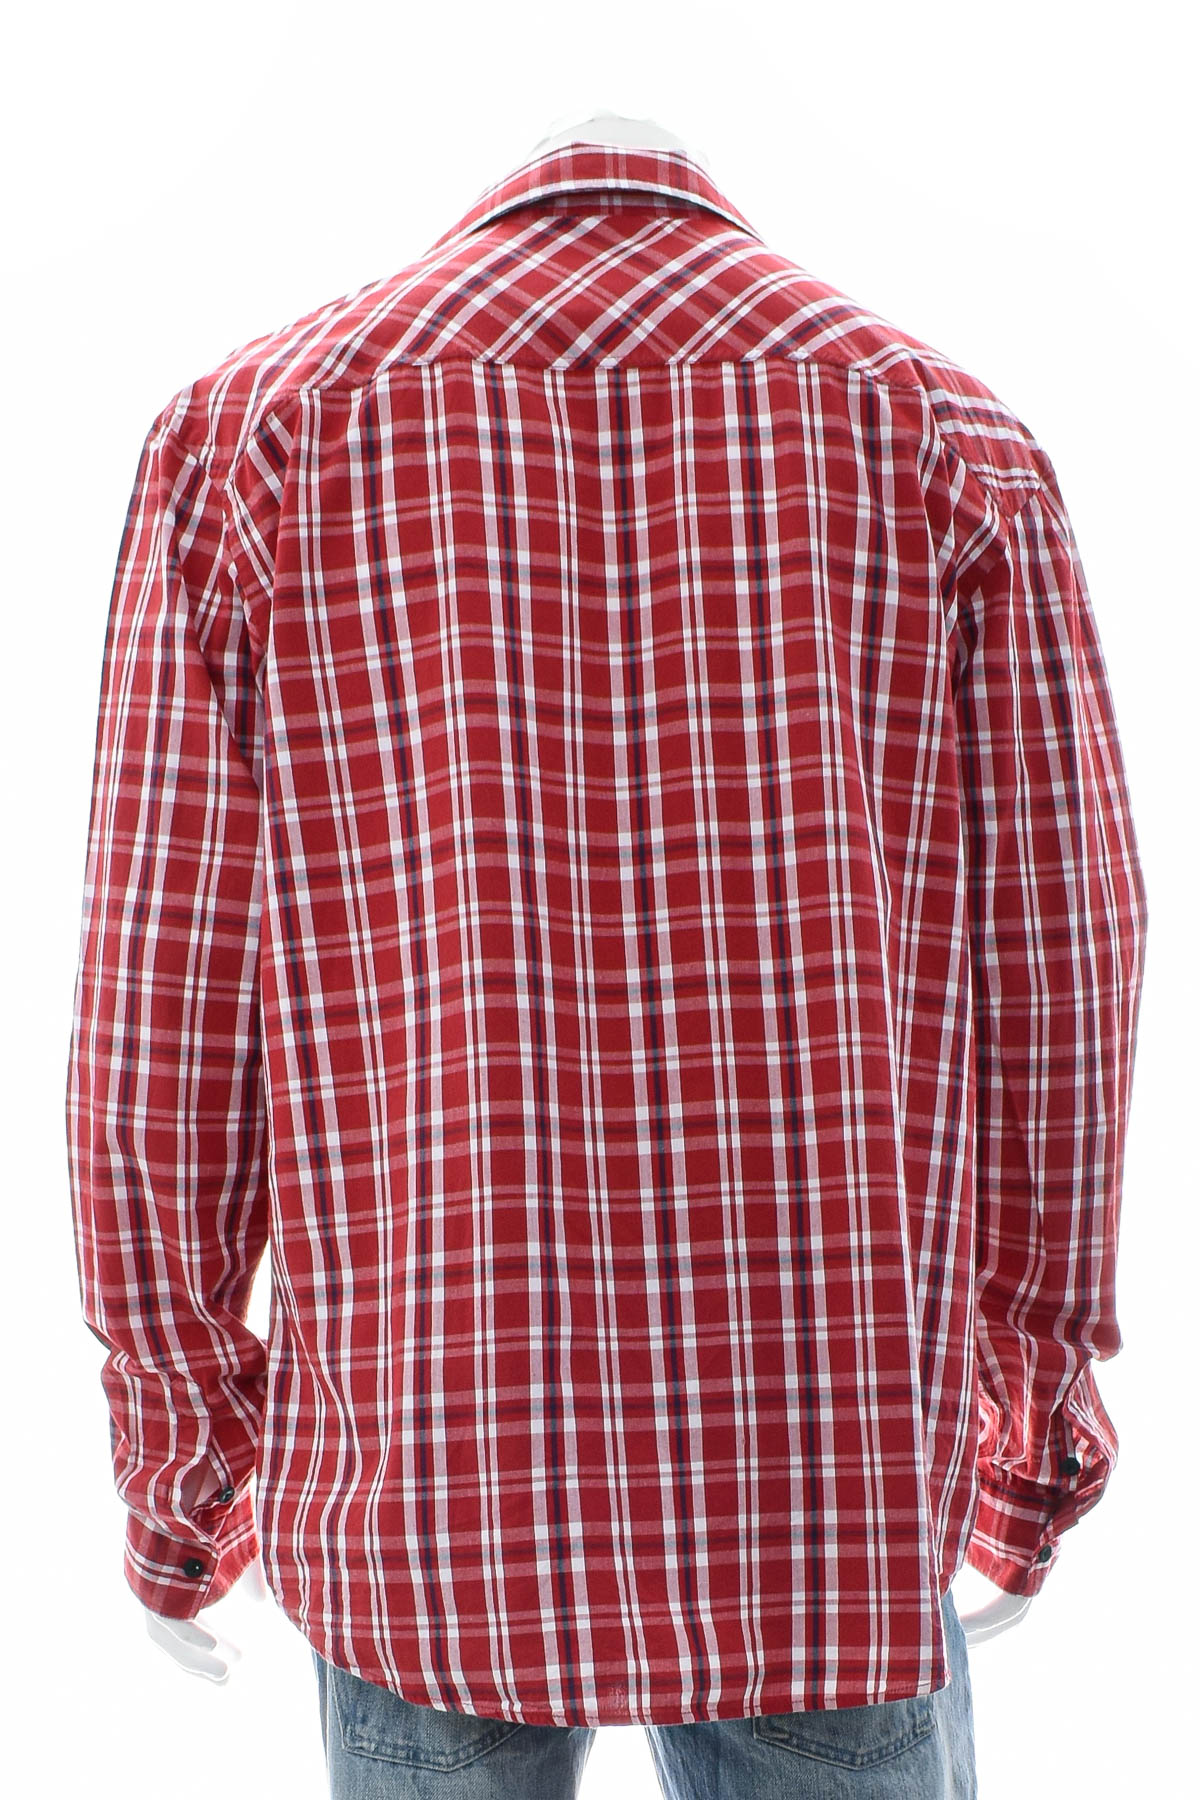 Ανδρικό πουκάμισο - Salomon - 1